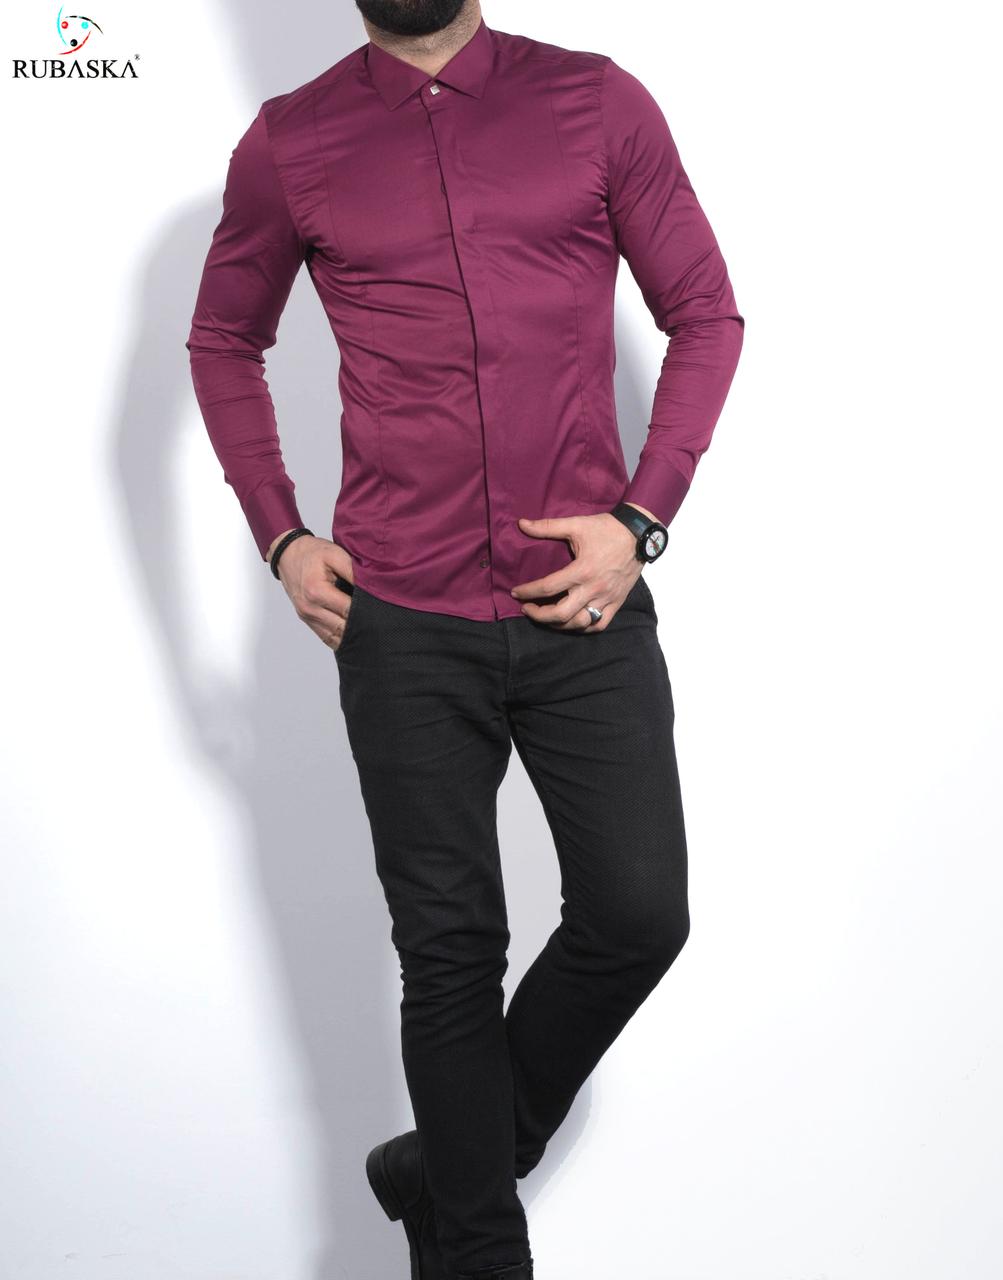 

Приталенная стильная мужская рубашка цвета фуксия S, M, XL, XXL